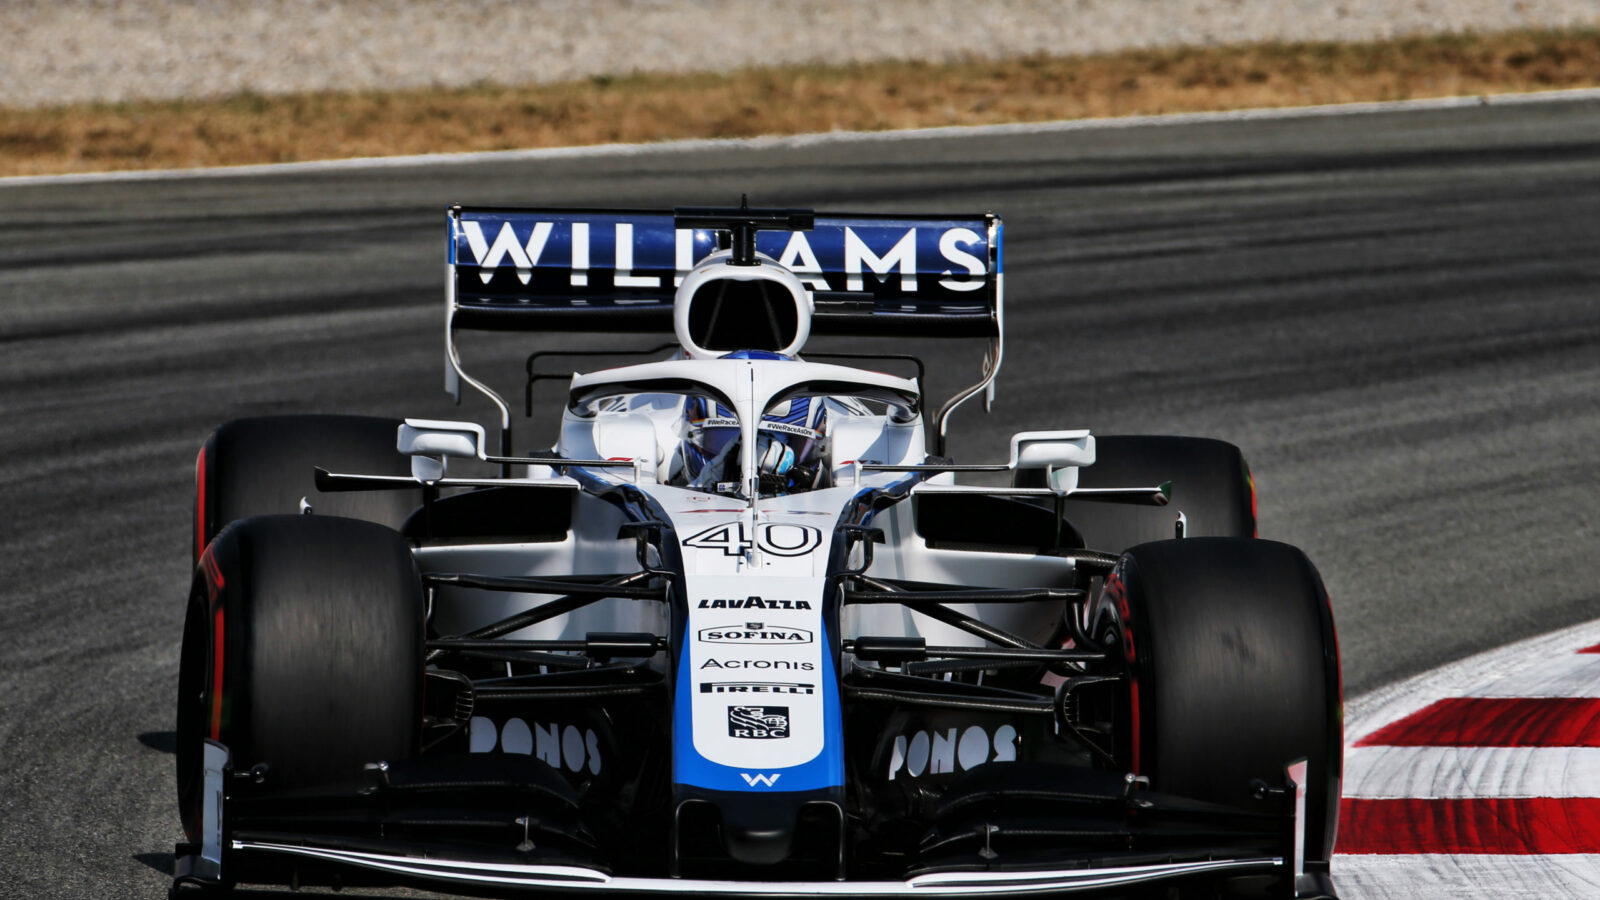 Formel-1: Williams Formel-1 Team verkauft